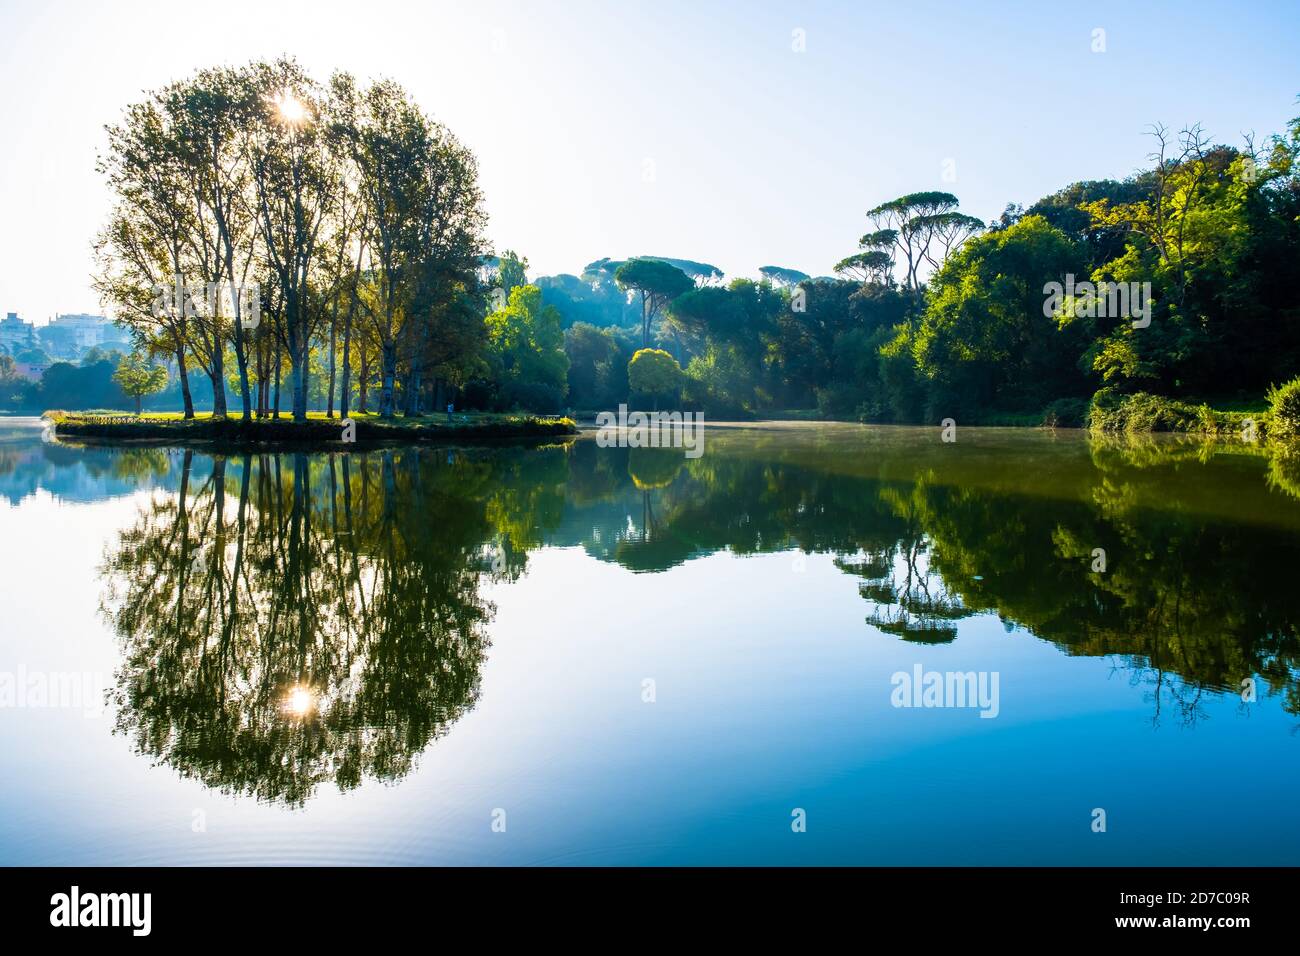 Les arbres et le soleil dans le parc de la Villa Ada à Rome en Italie se reflètent sur l'eau du lac environnant créant un patter symétrique. L'image a un peu Banque D'Images